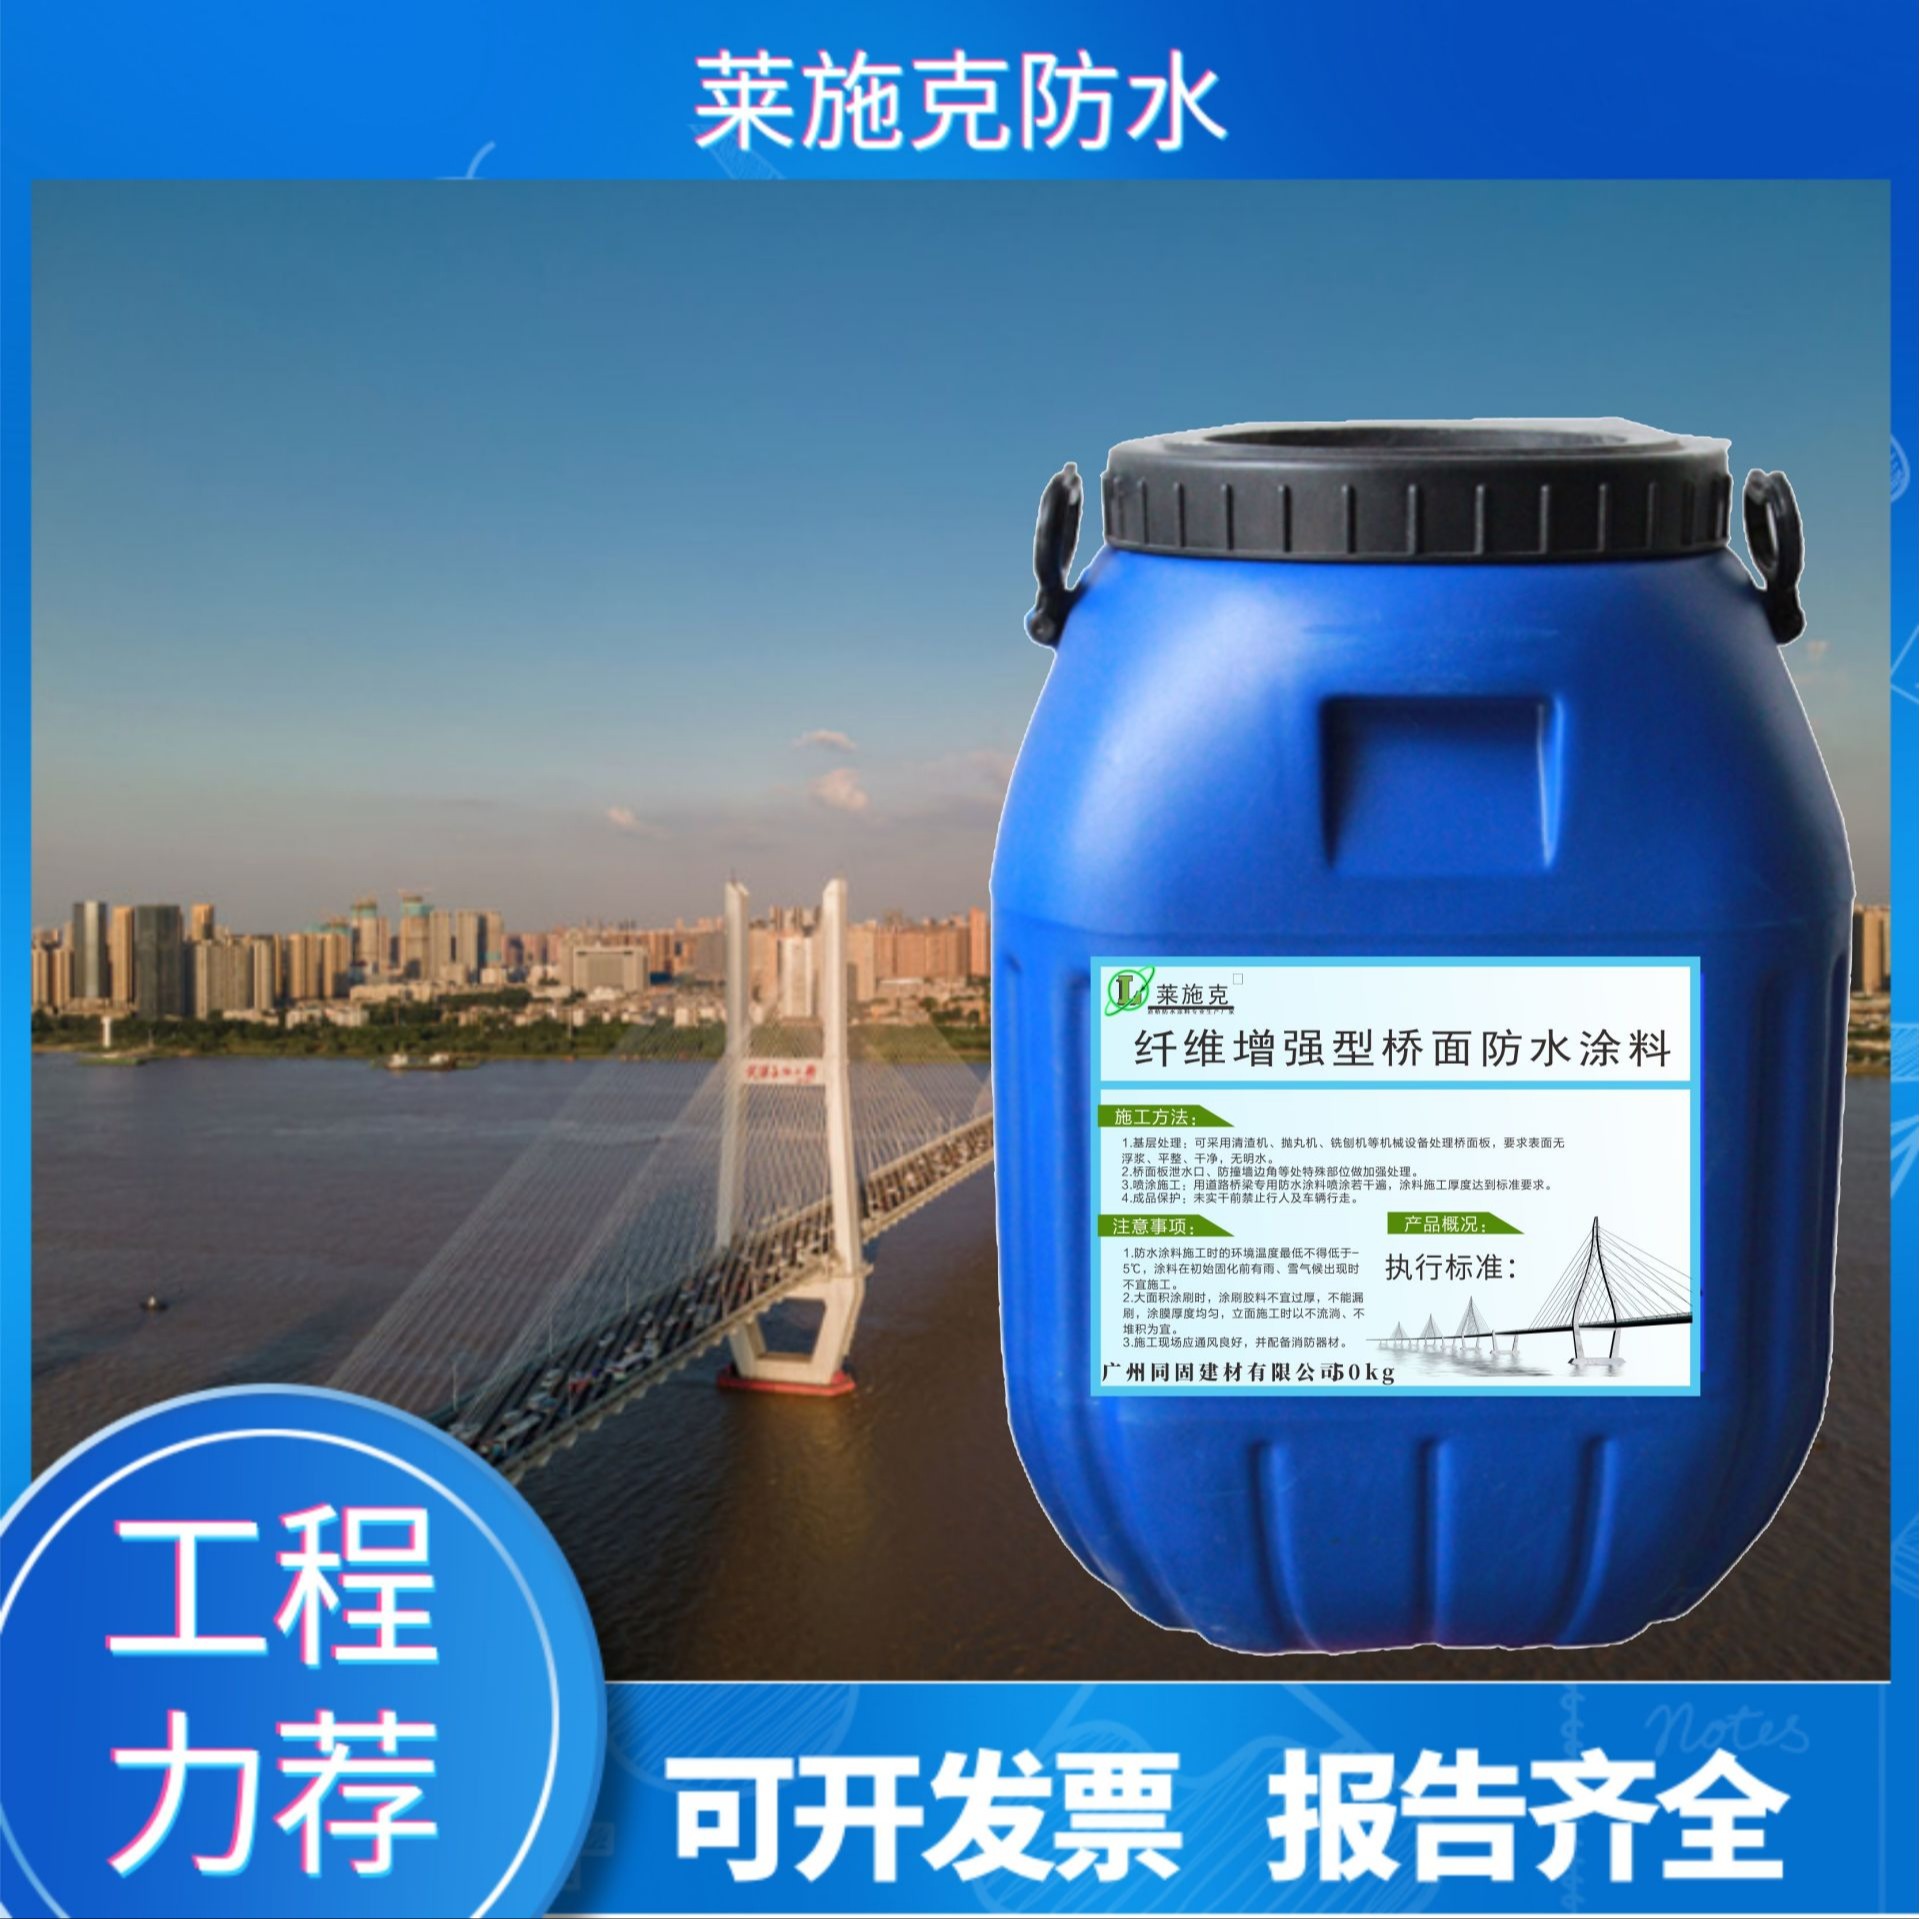 广州莱施克纤维增强型桥梁路面防水涂料 厂家直销含税含运费图片